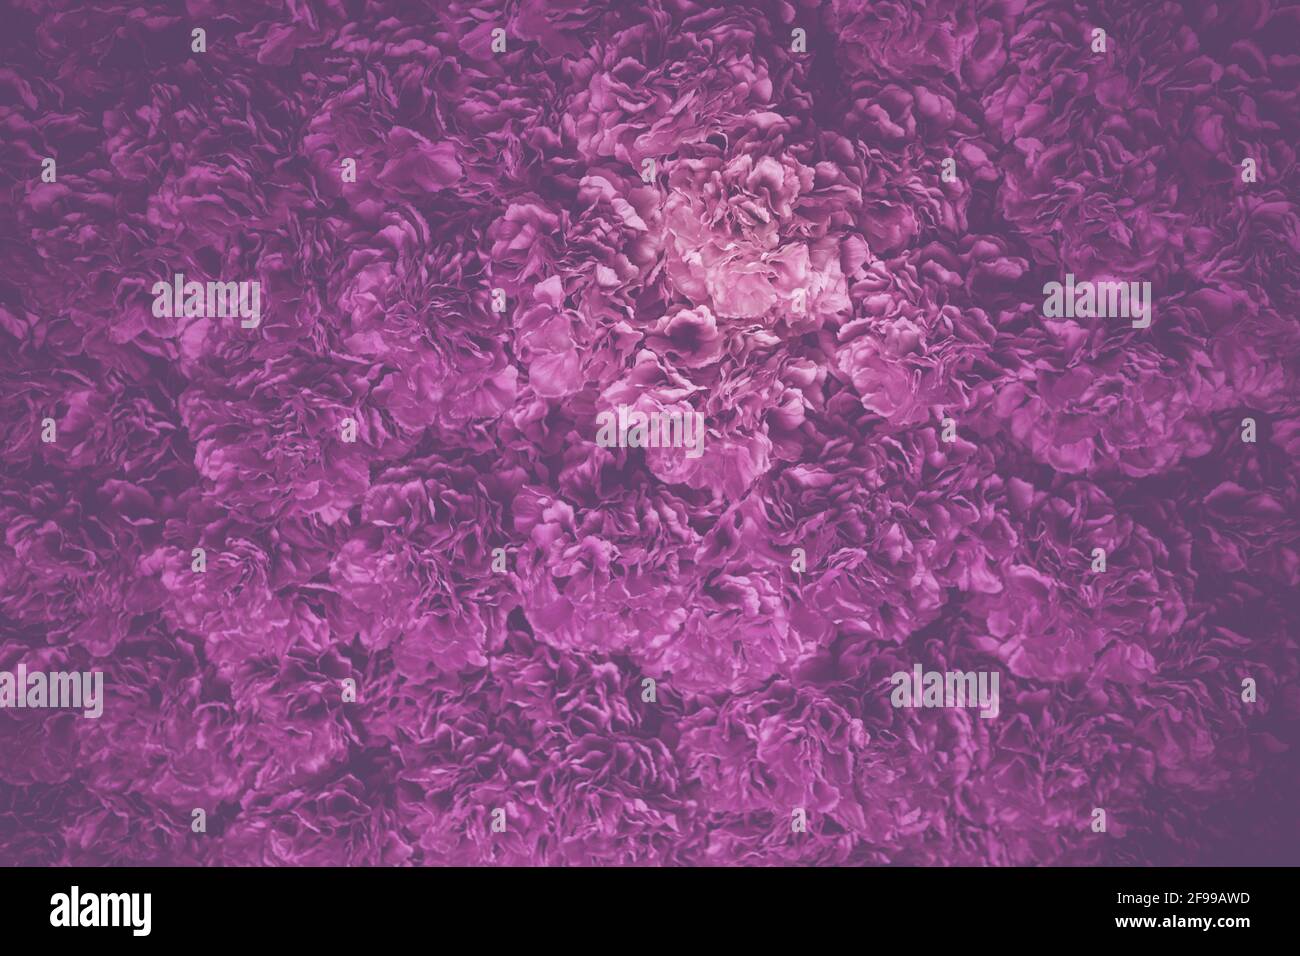 Mare di fiori in viola rosa - molti fiori vicino insieme Foto Stock